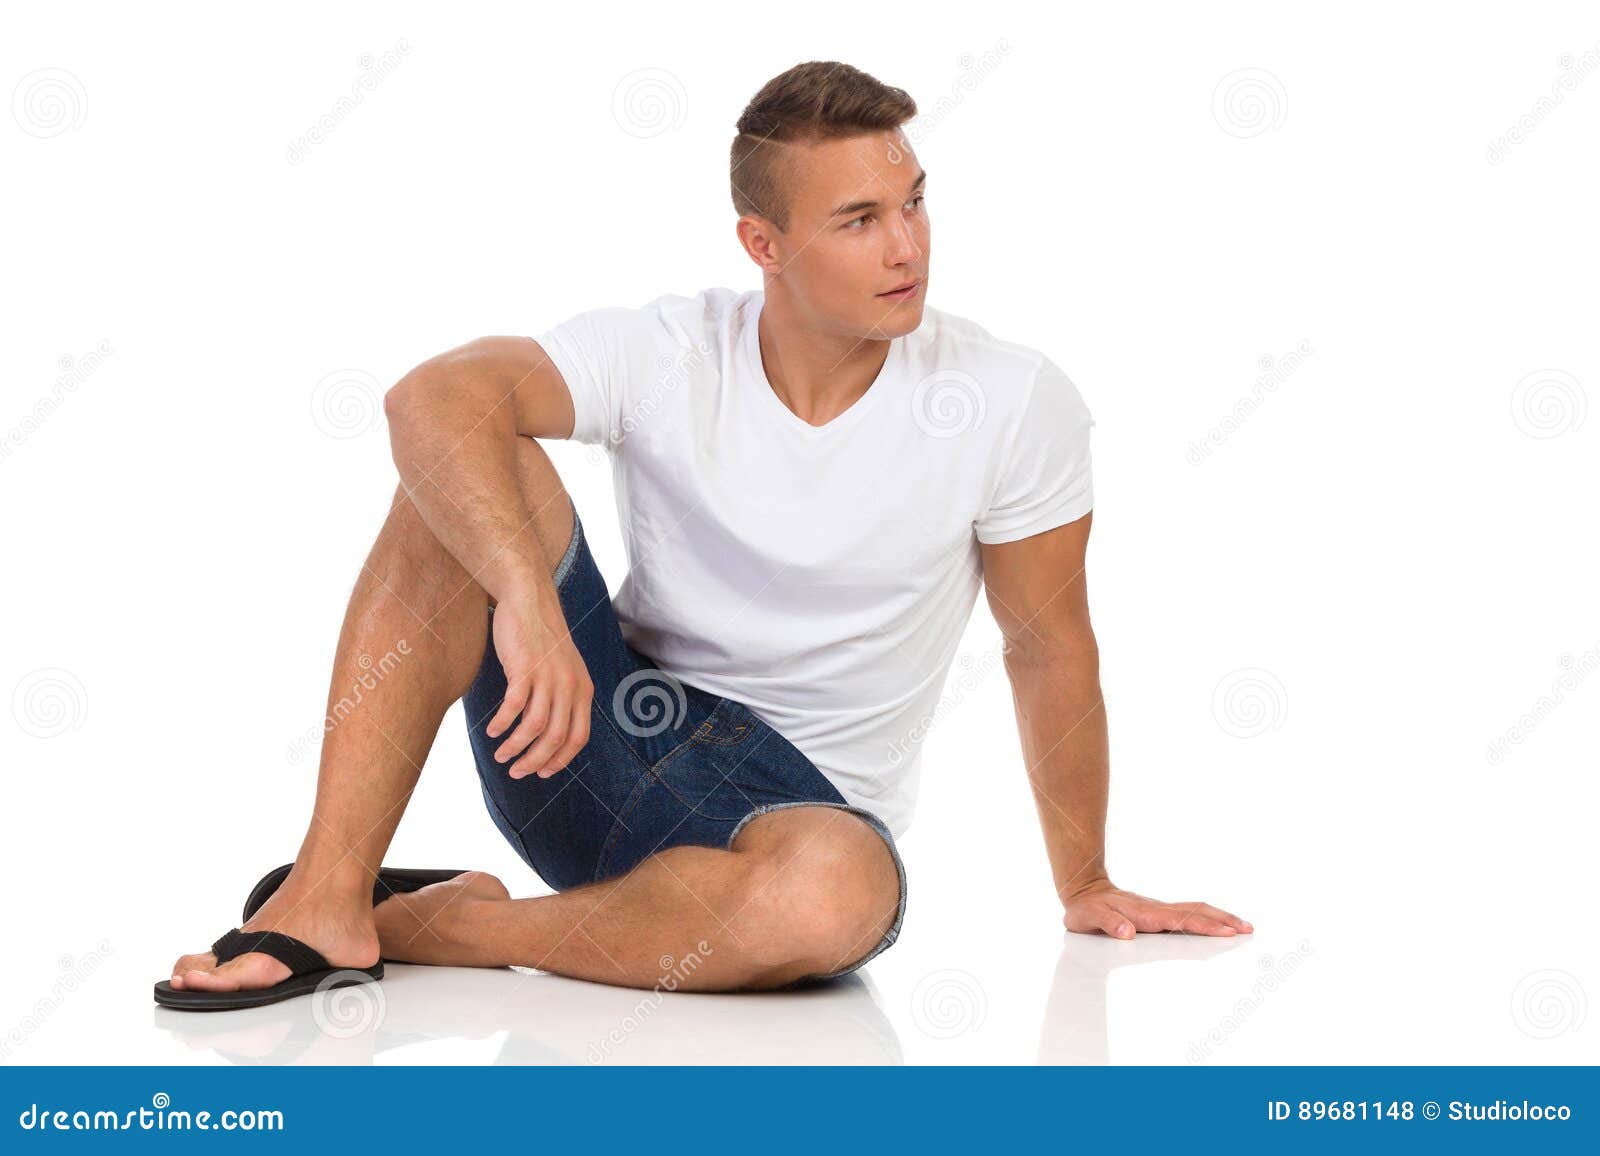 Мужчина лежит нога на ногу